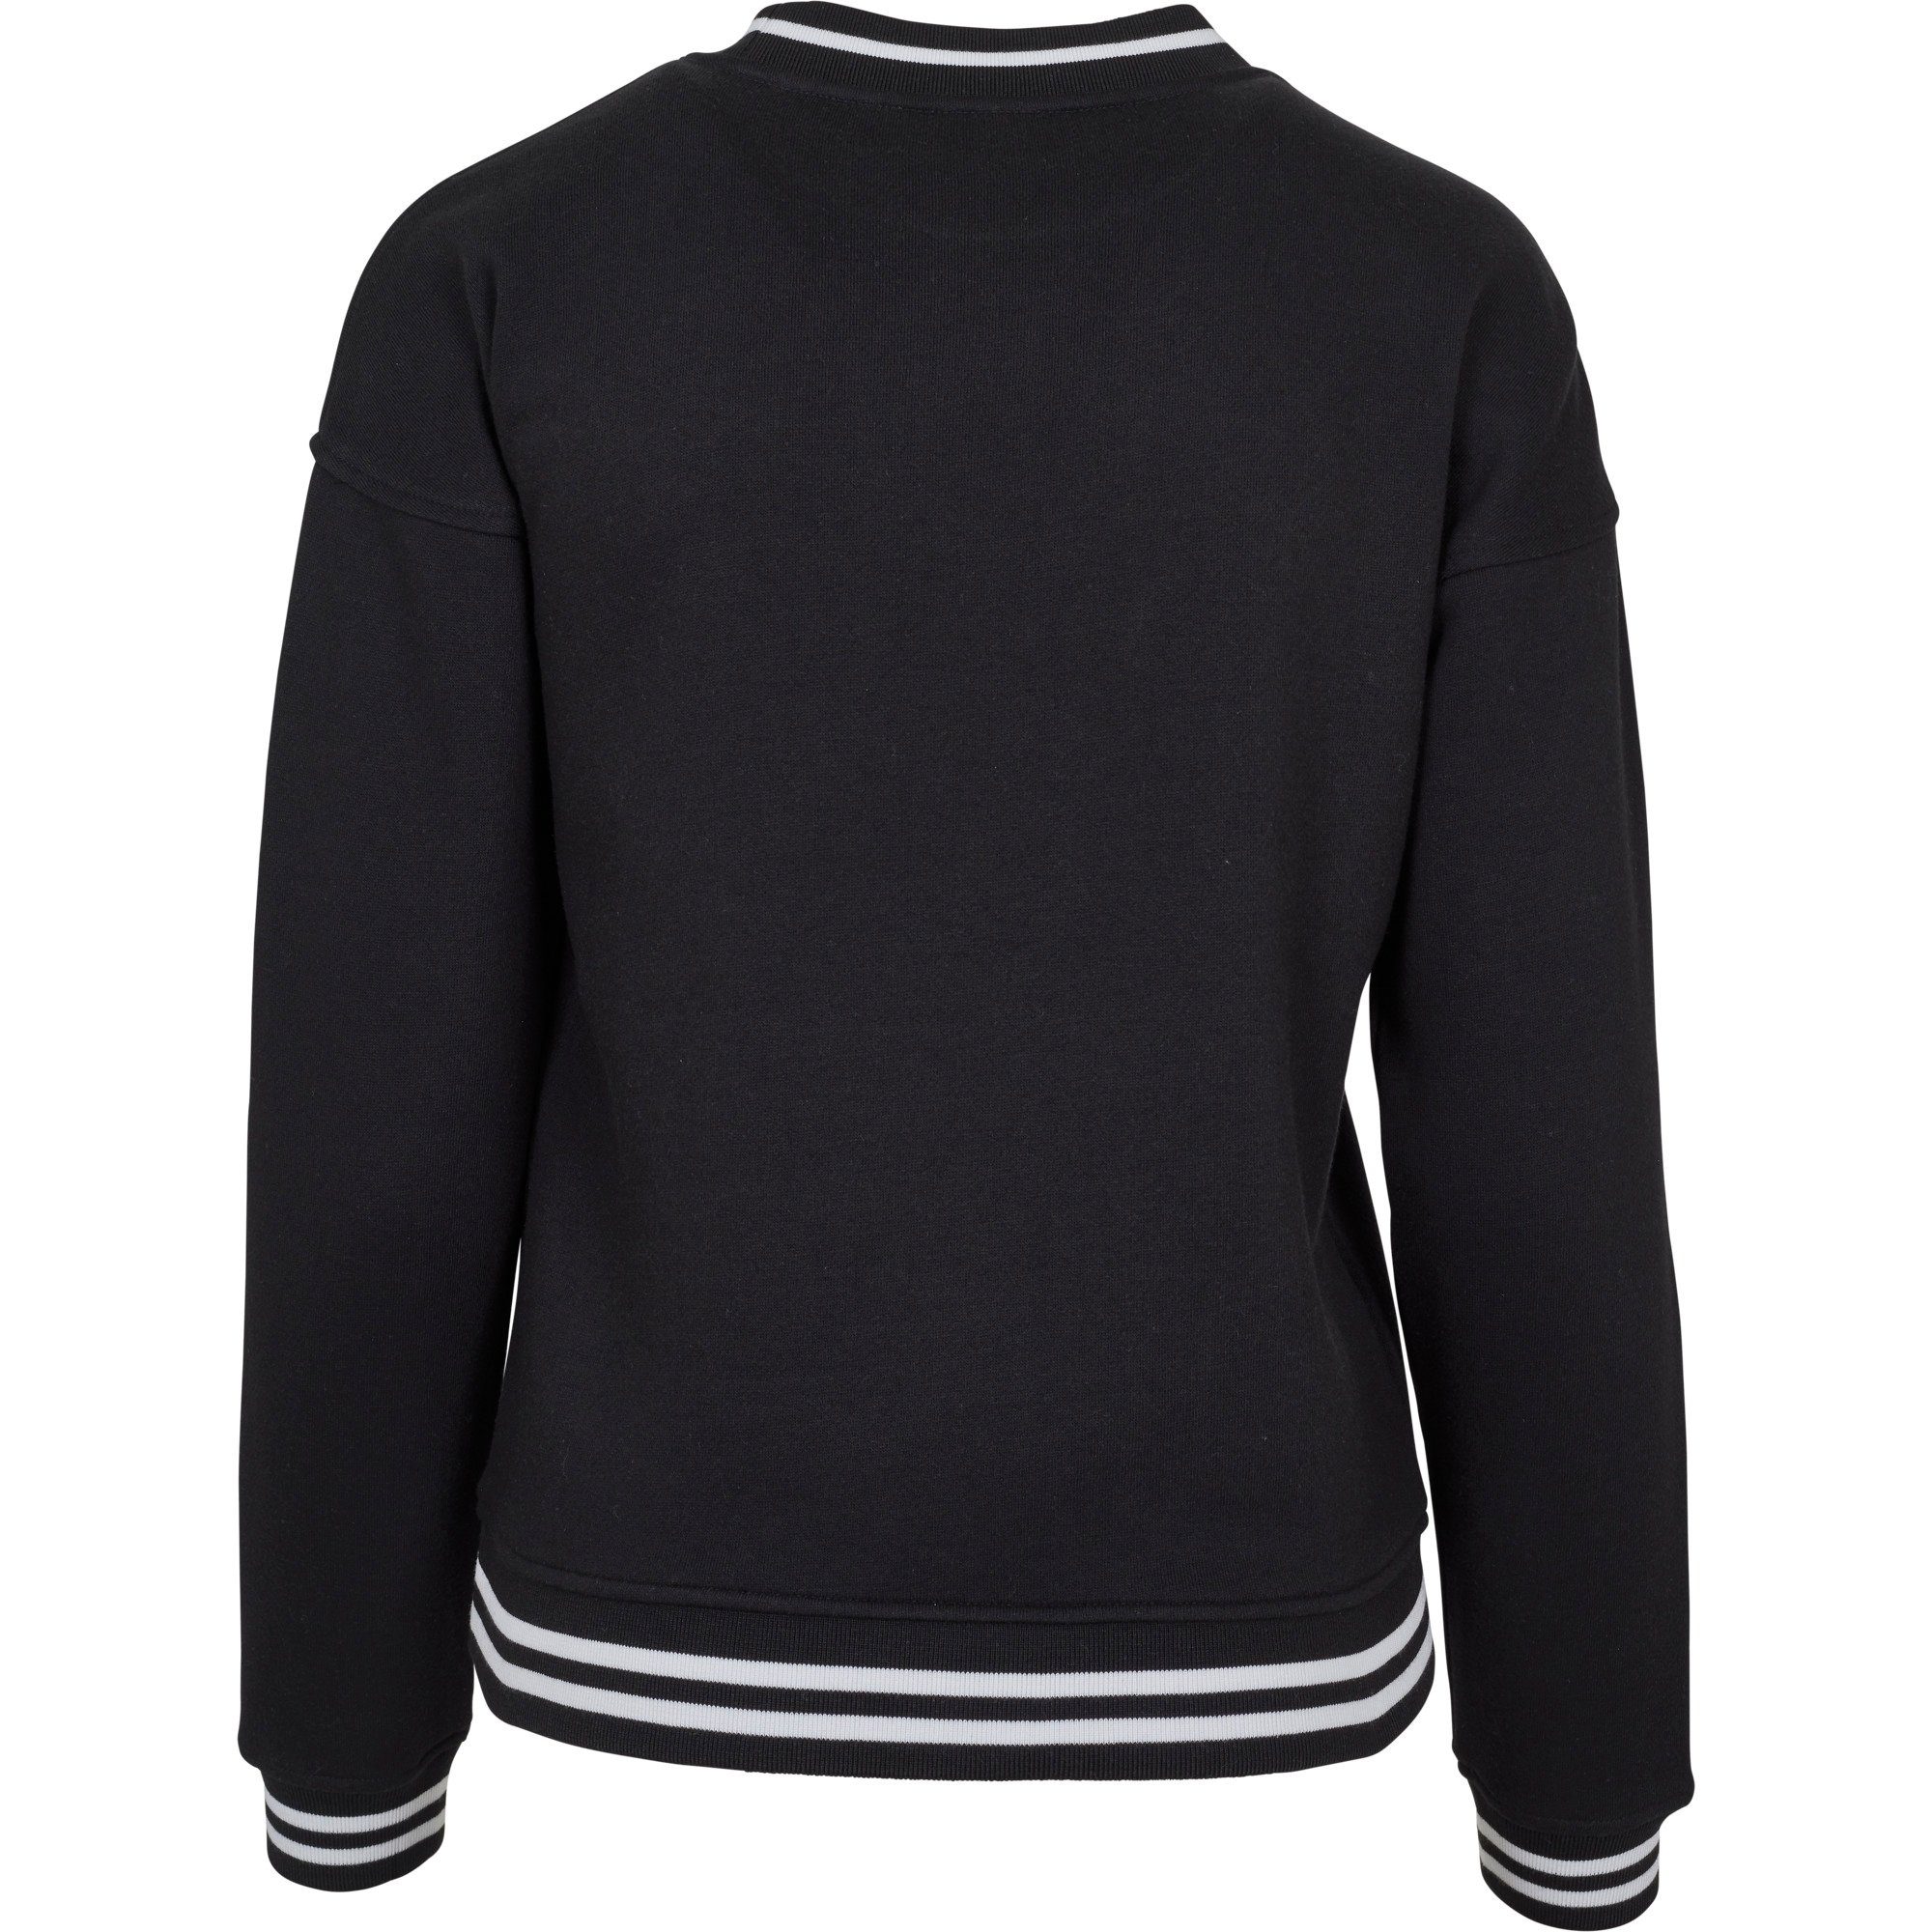 Your Mädchen College Brand Optik bis Sweatshirt / Damen Crewneck schwarz 5XL in Build Sweater XS